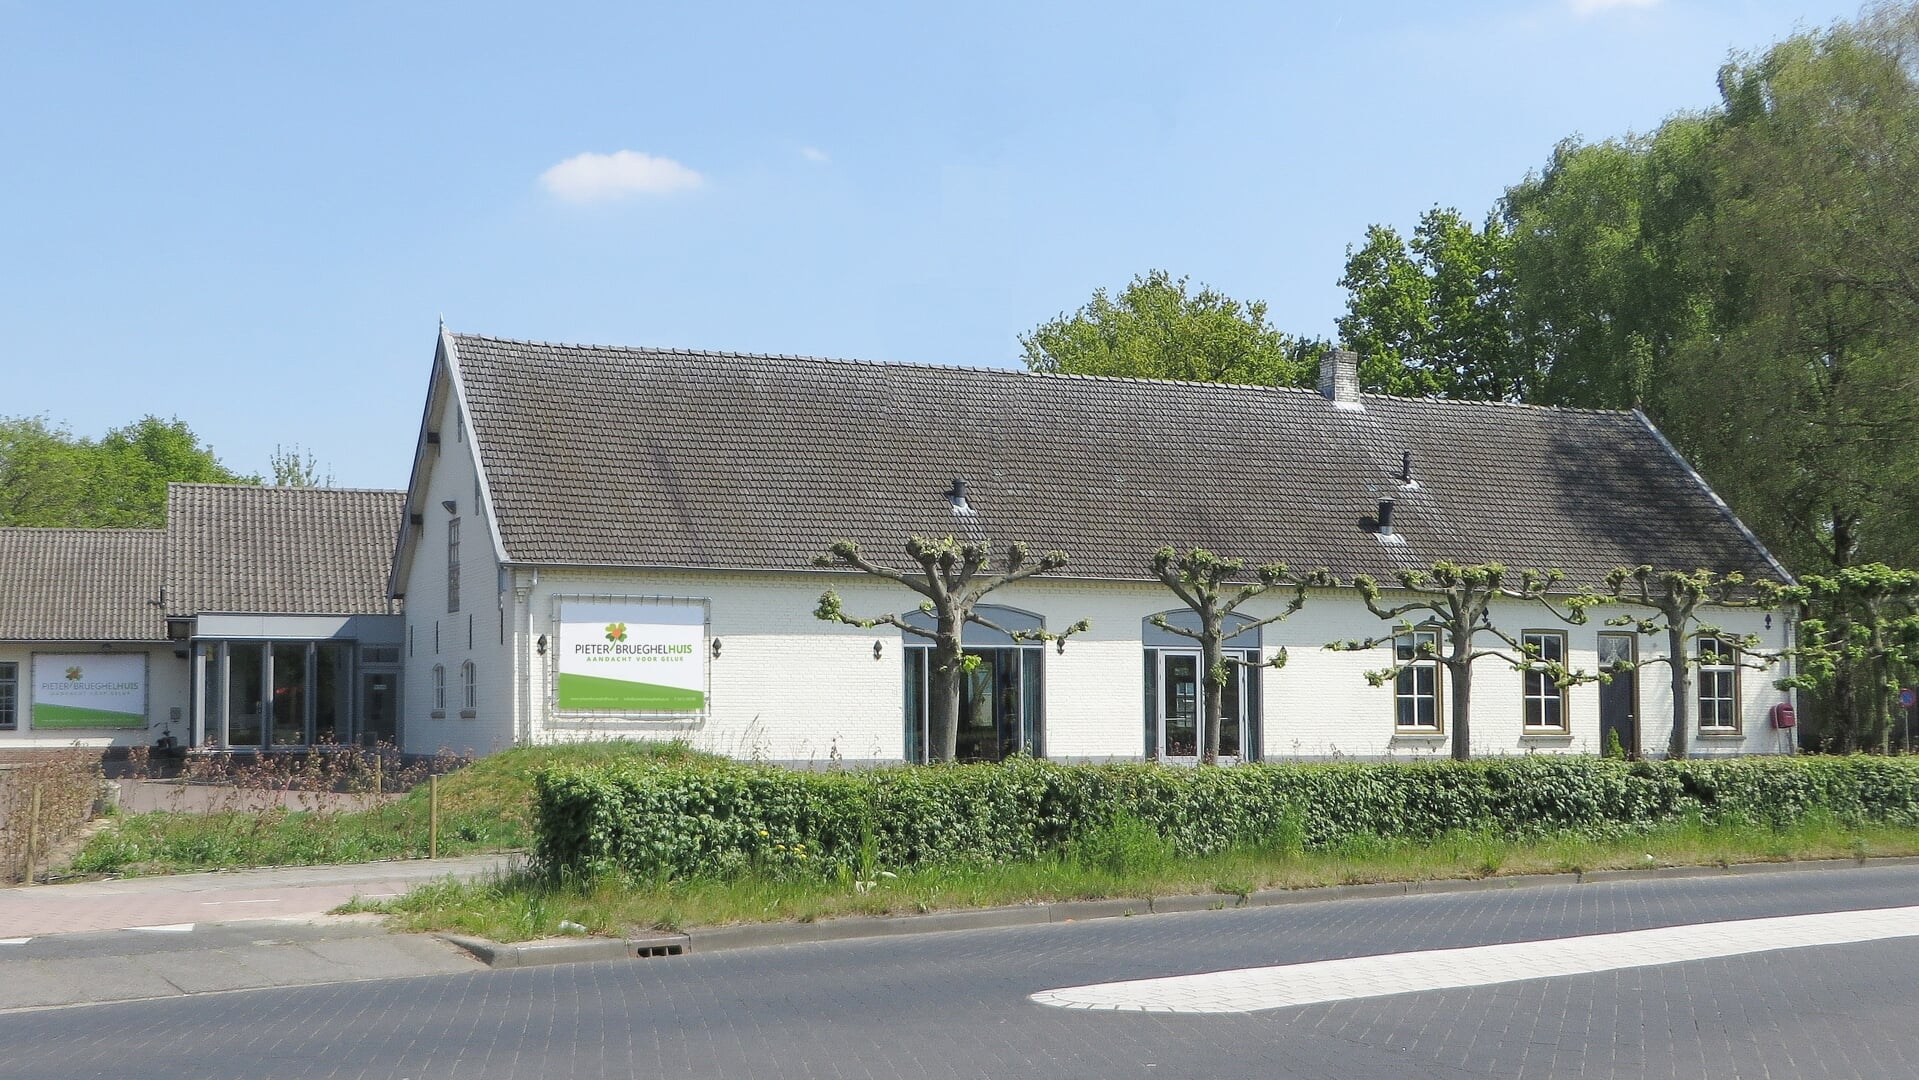 Het PieterBrueghelHuis is gelegen aan Middegaal 25 in Veghel.